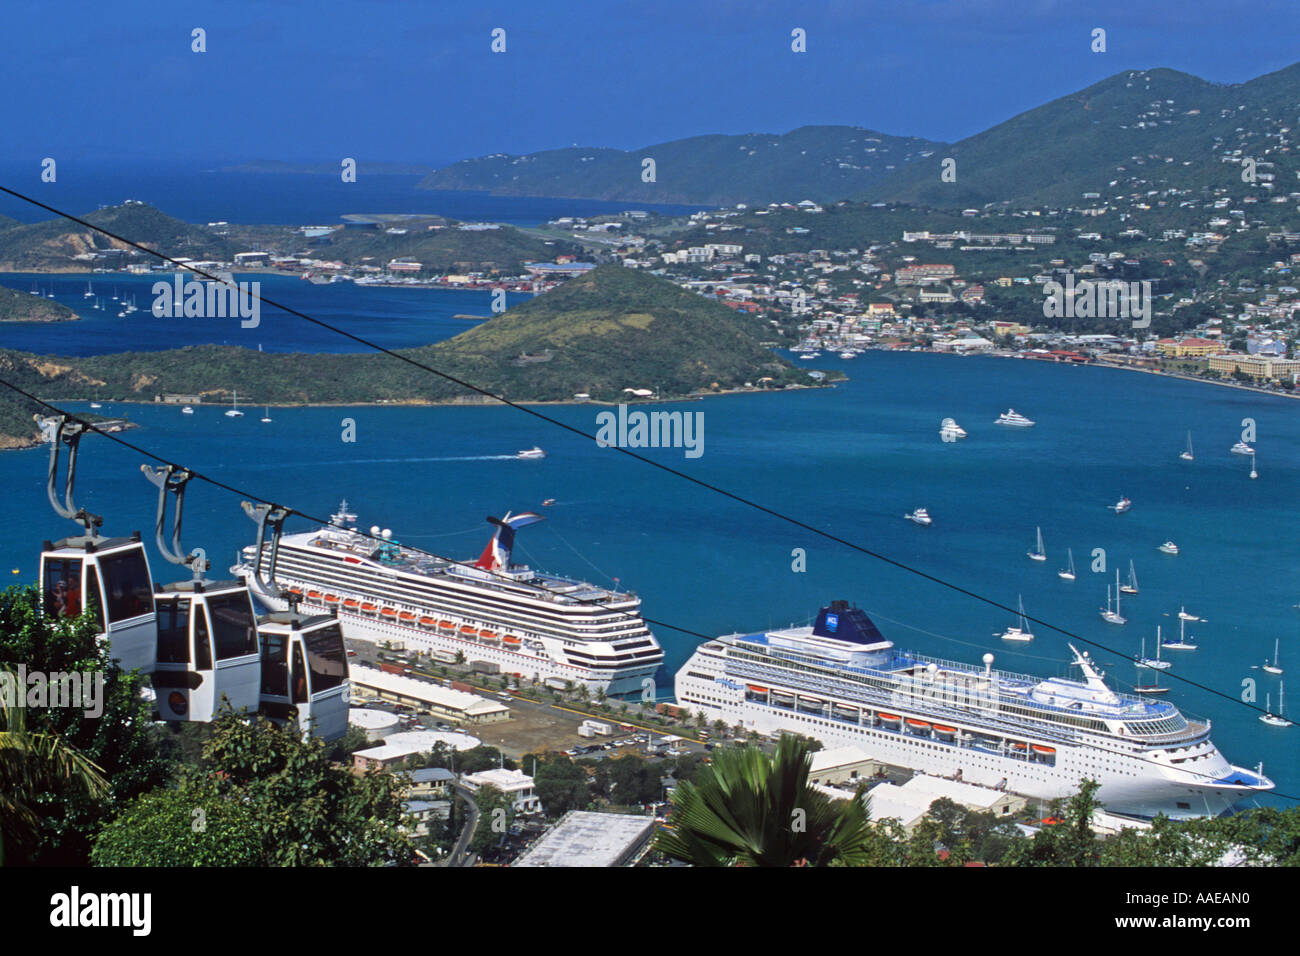 cruise ships docked in Charlotte Amalie, St. Thomas, US Virgin Islands Stock Photo